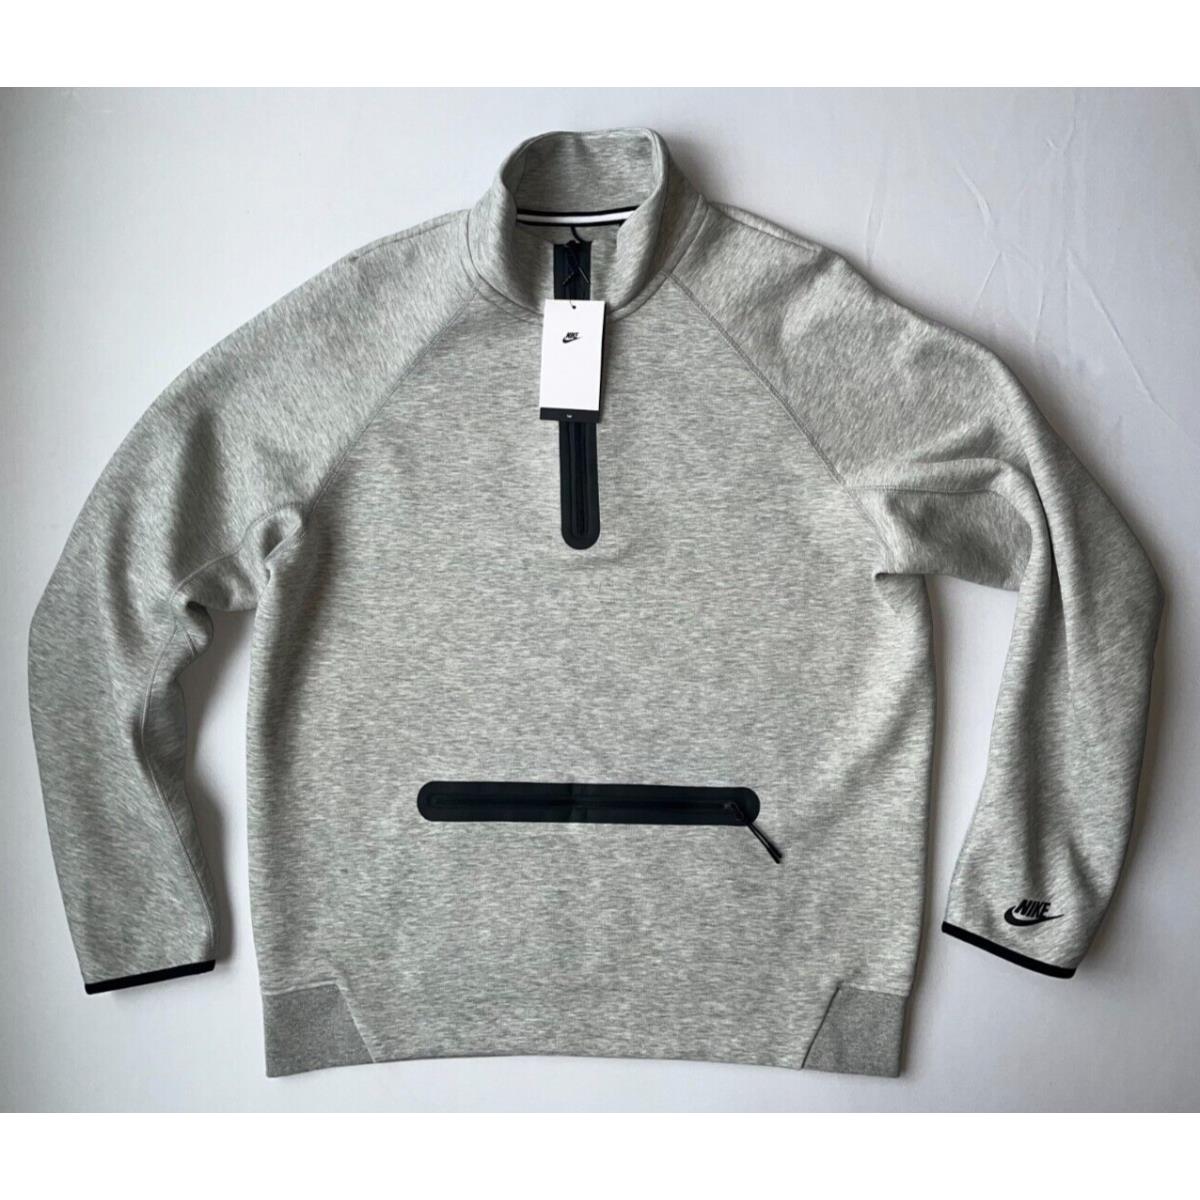 Nike Sportswear Tech Fleece Mens Sz XL Tall 1/2 Zip Sweatshirt Pullover Gray